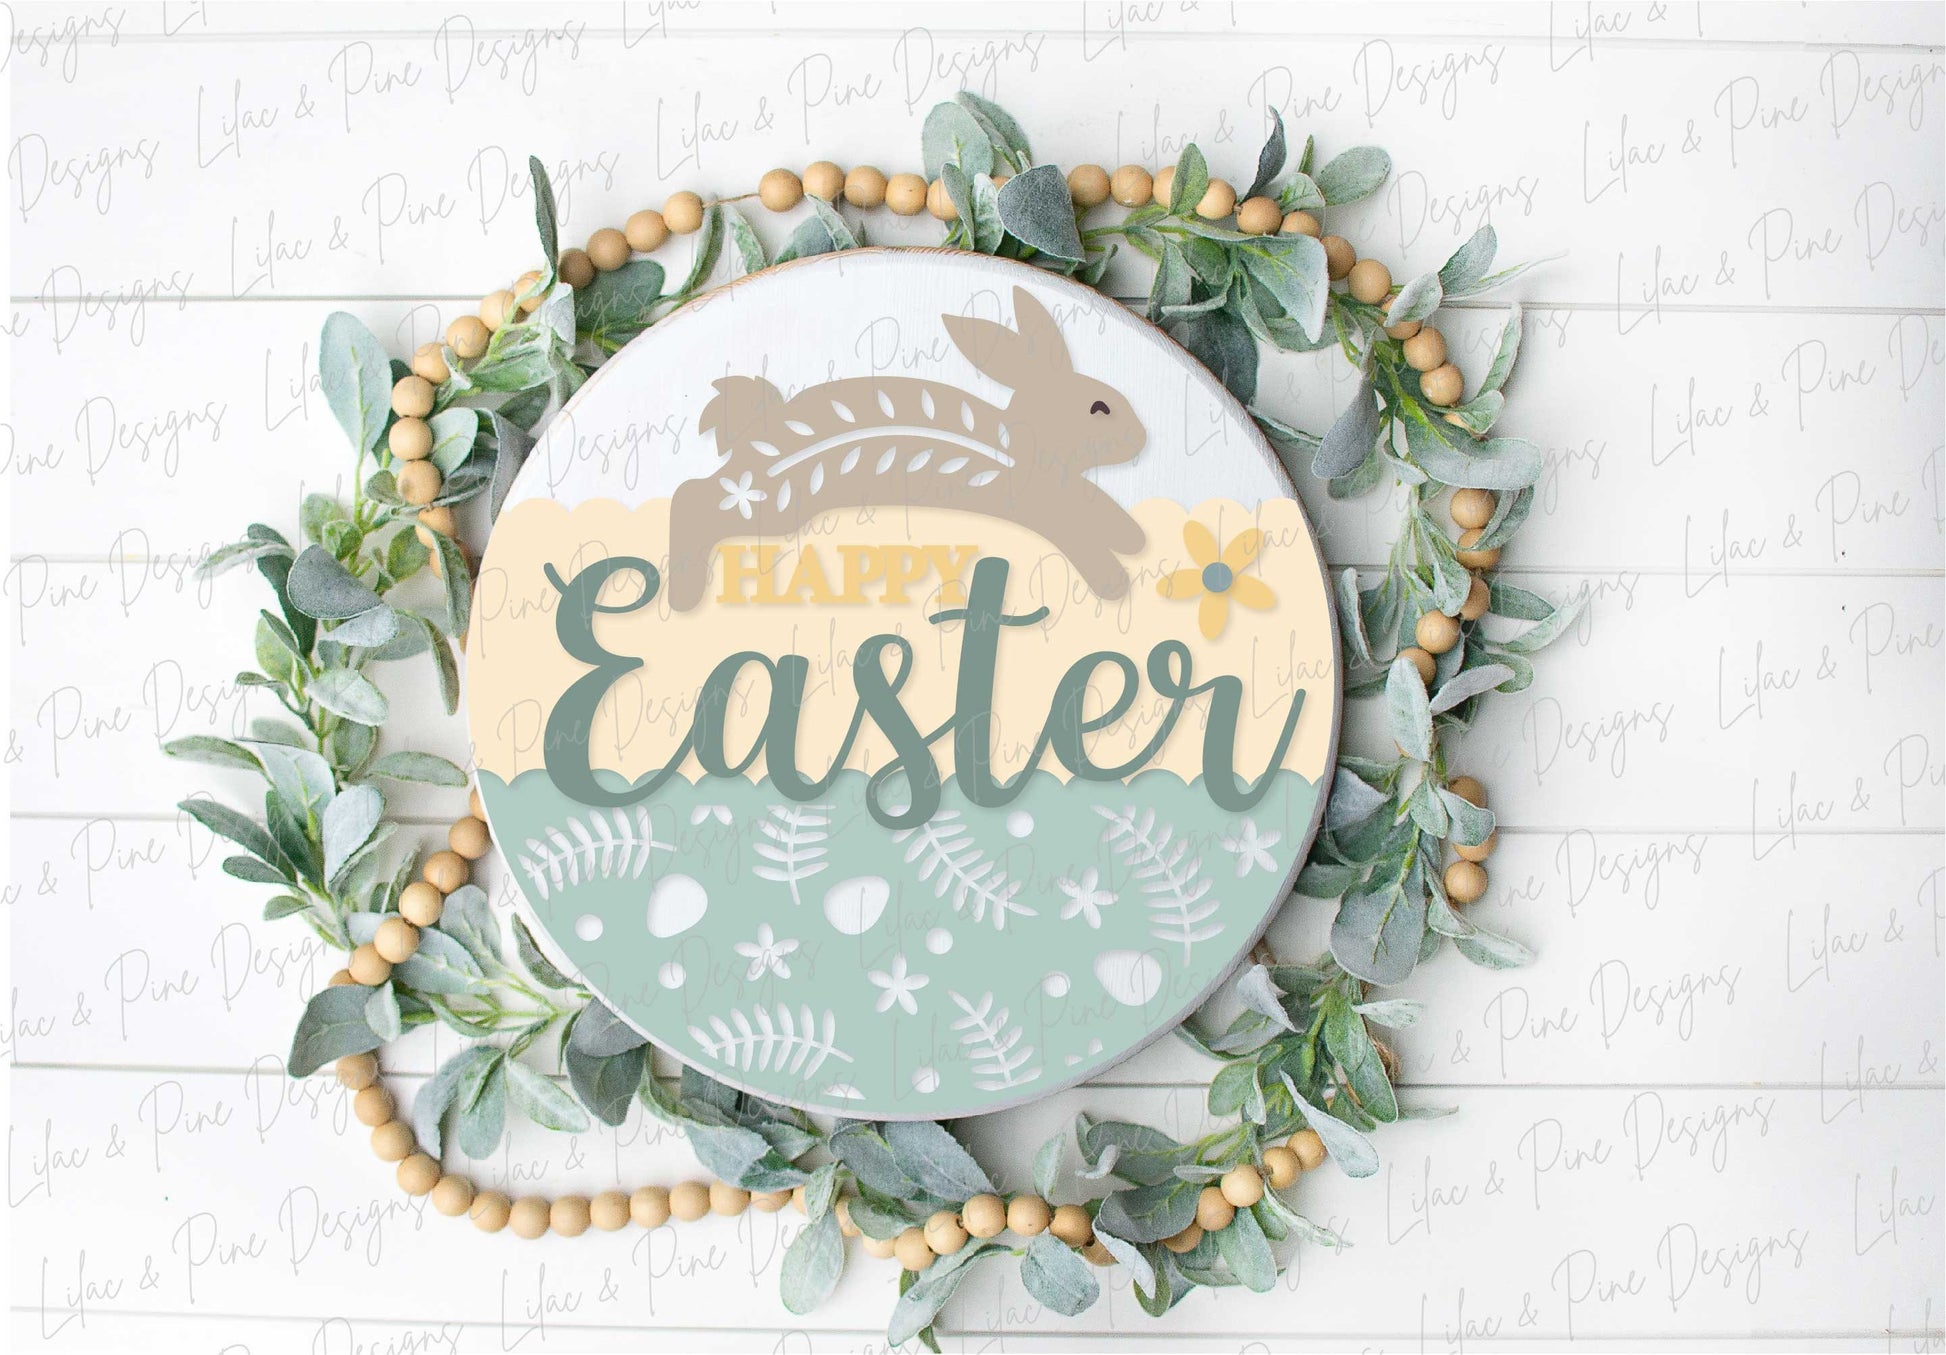 Happy Easter sign SVG, Easter door hanger, Easter Bunny Welcome sign SVG, Easter decor, Cottagecore Easter, Glowforge SVG, laser cut file